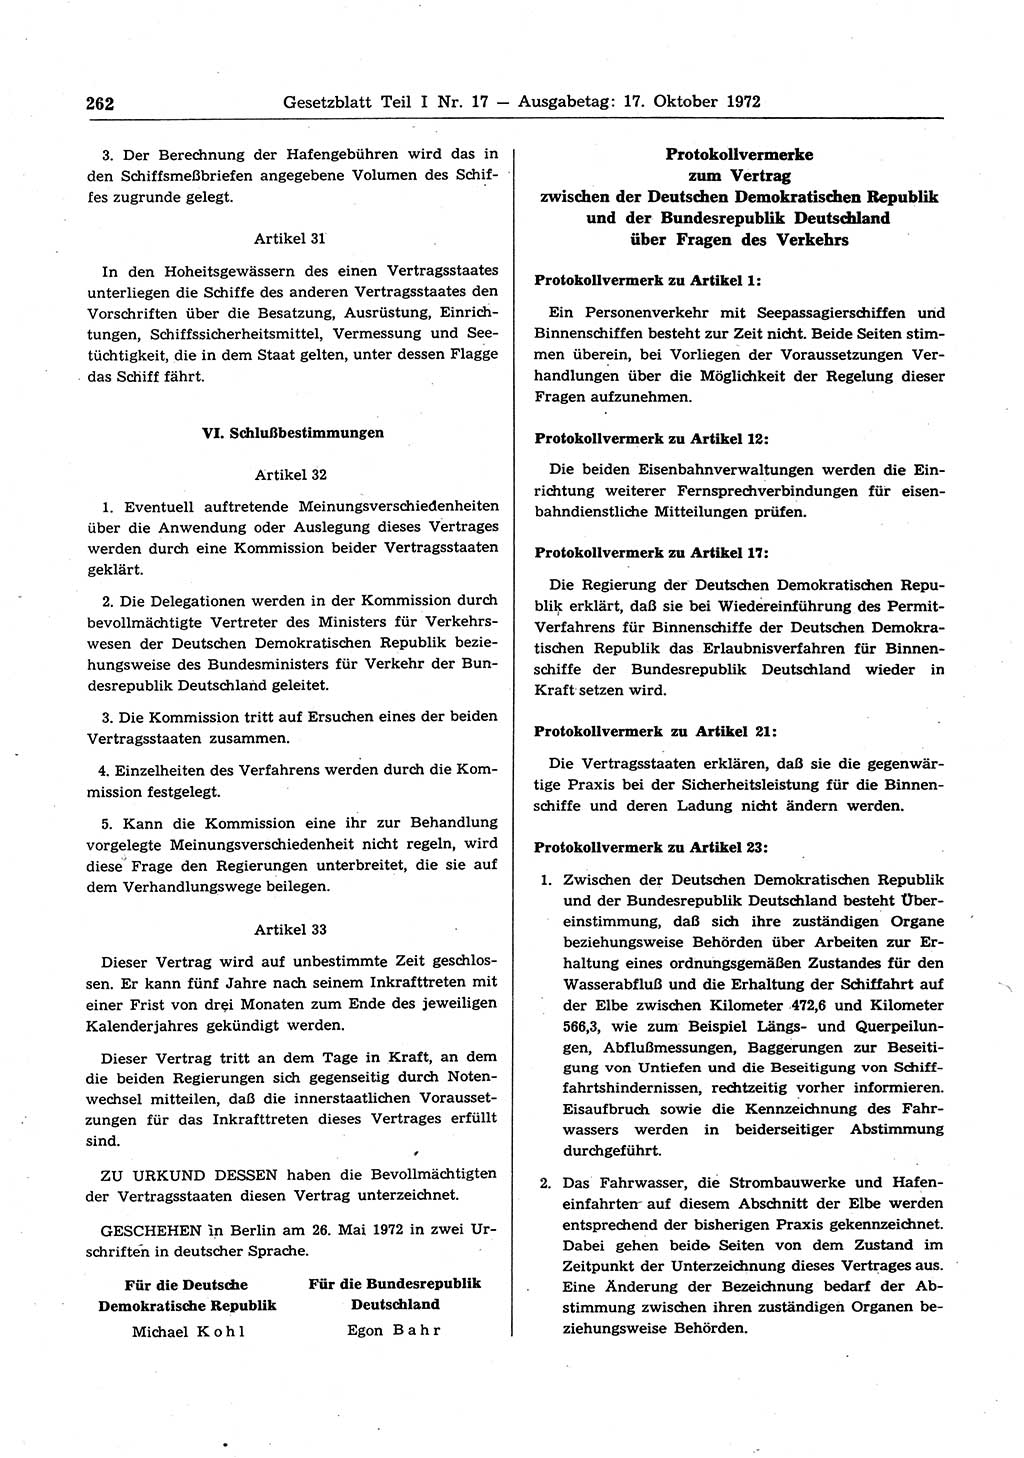 Gesetzblatt (GBl.) der Deutschen Demokratischen Republik (DDR) Teil Ⅰ 1972, Seite 262 (GBl. DDR Ⅰ 1972, S. 262)